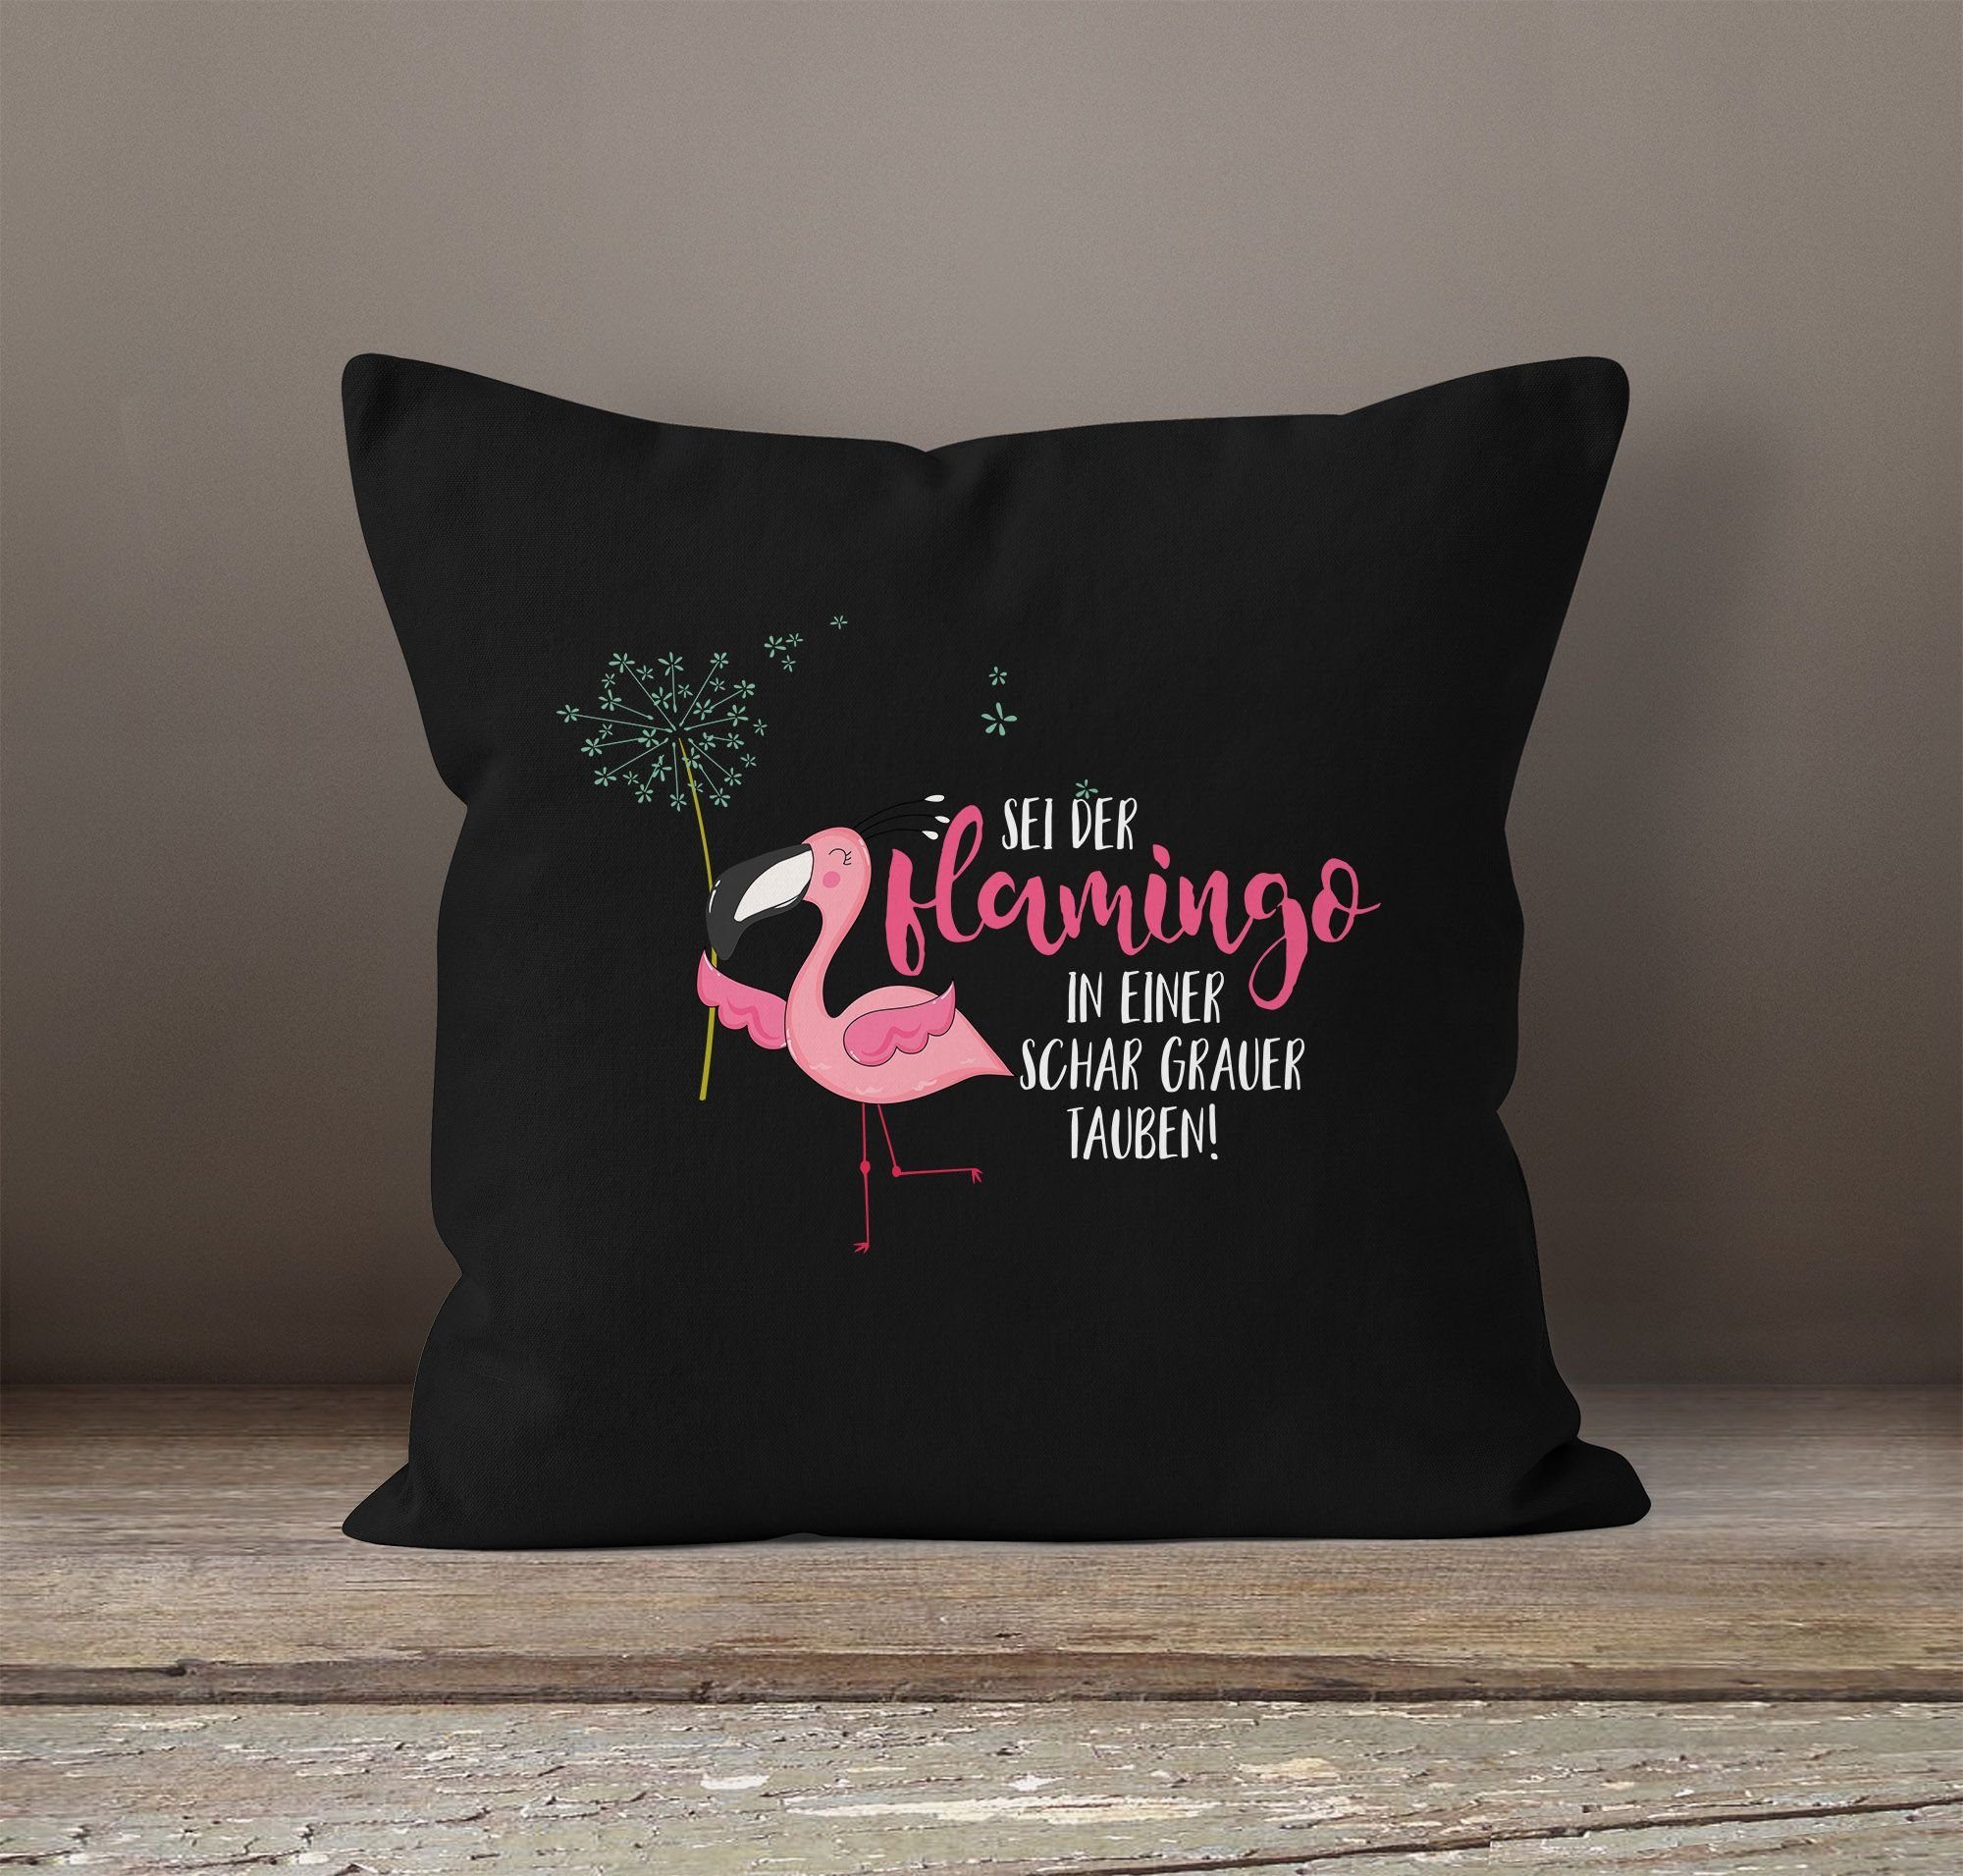 MoonWorks Dekokissen grauer Pusteblume Kissenbezug in Flamingo Kissen-Hülle Baumwolle schwarz der sei Deko-Kissen Tauben Schar MoonWorks® Flamingo einer 40x40